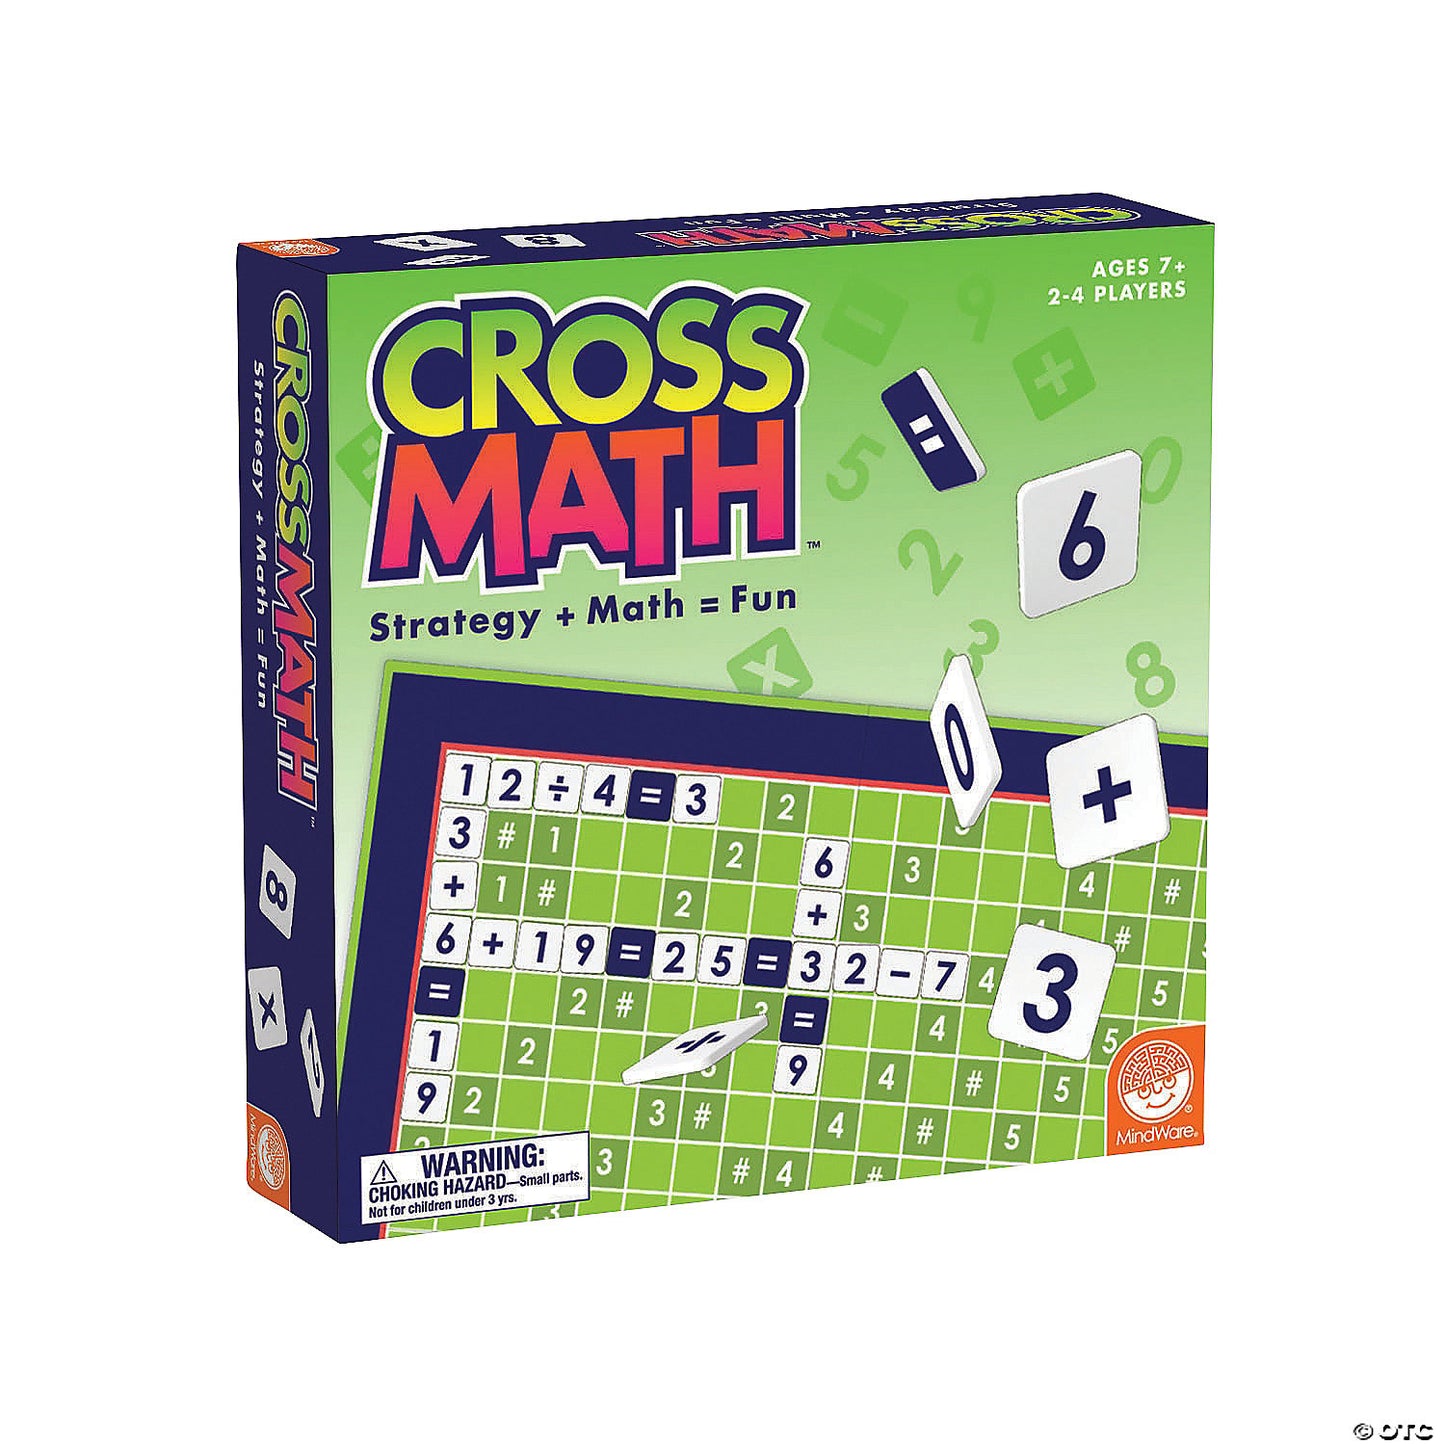 Cross Math Strategy + Math = Fun